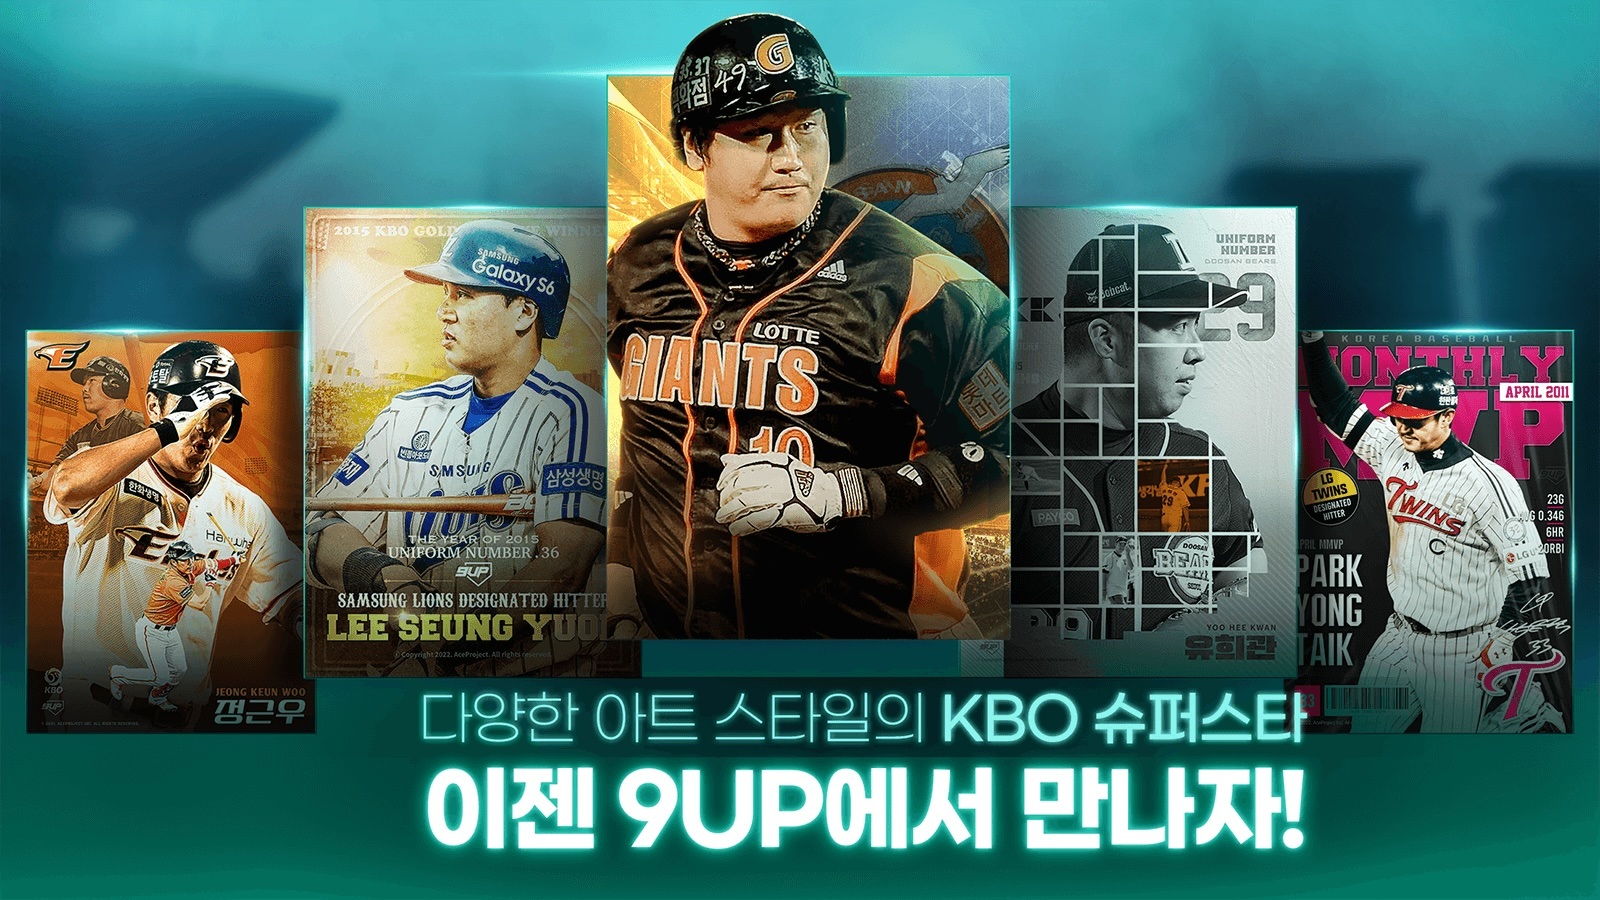 9UP 프로야구: KBO 모바일 야구 매니저 - 멀티플레이 전략 스포츠게임 블루스택으로 PC 다운로드 및 플레이 방법